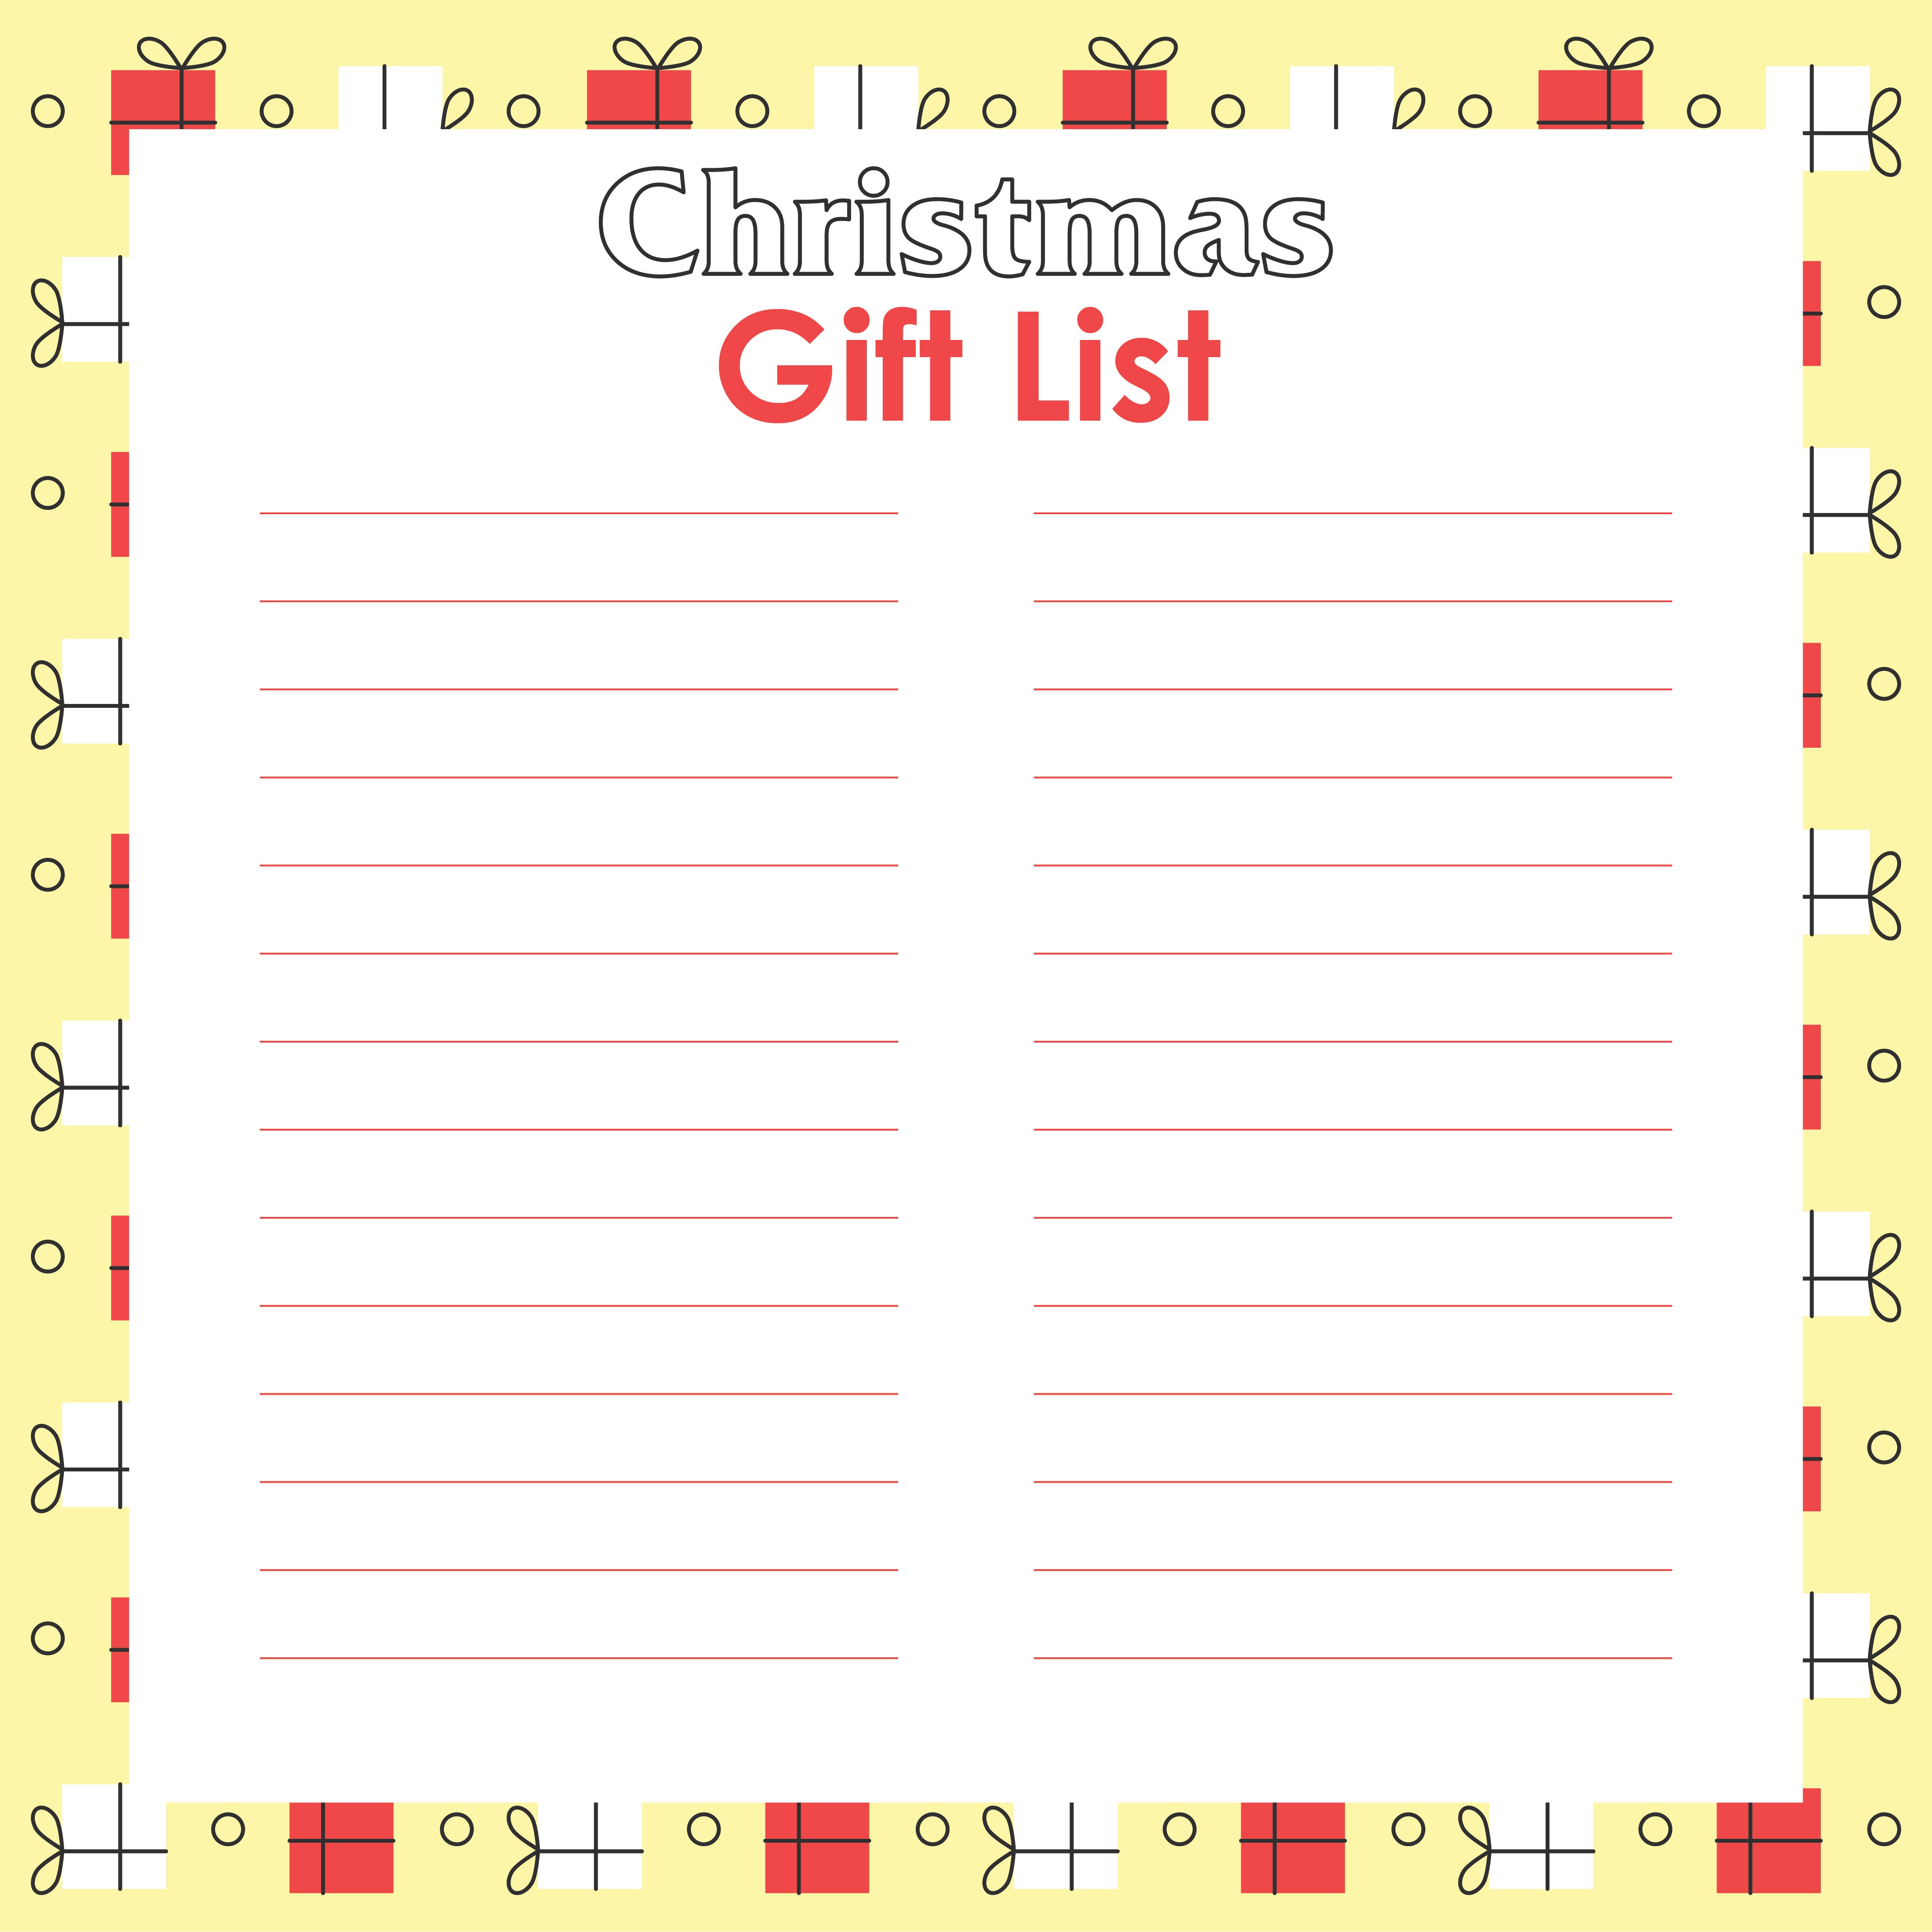 Printable Christmas Gift List